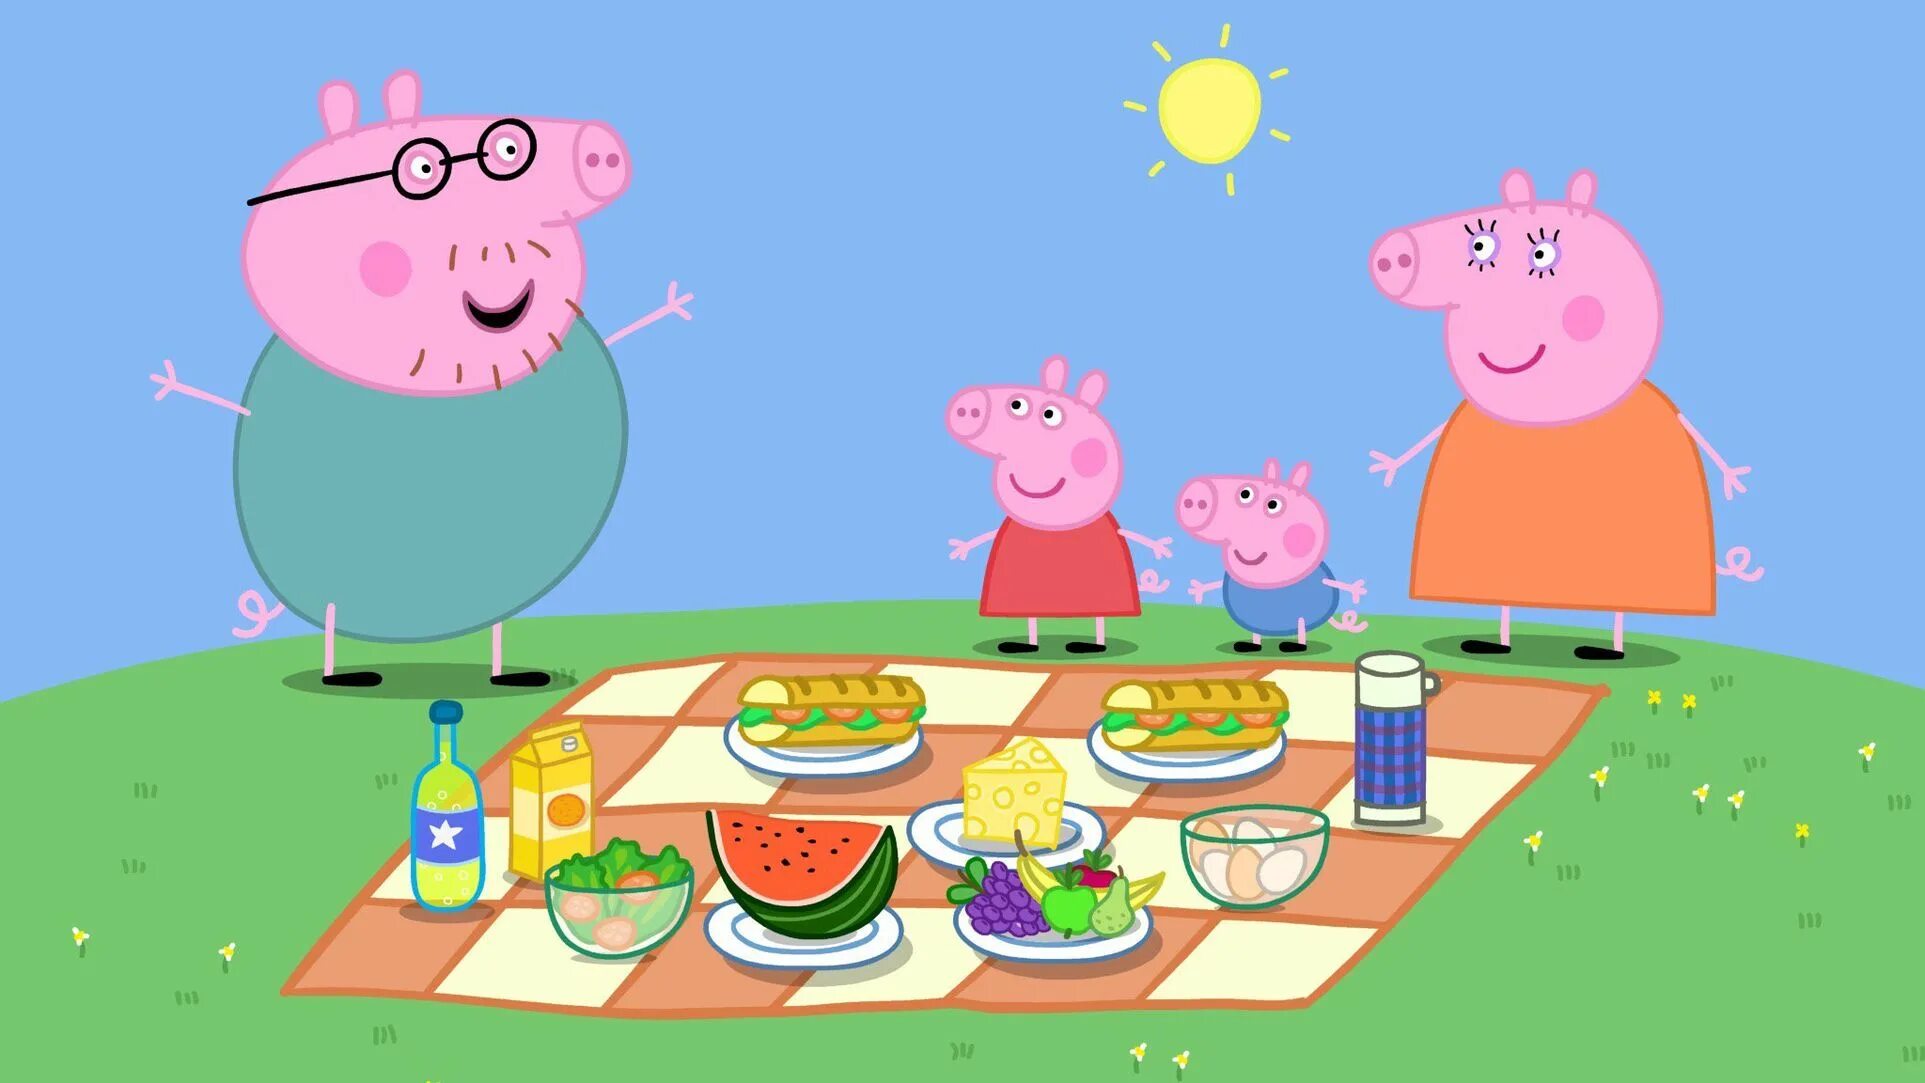 7 свинки пеппы. Свинка Пеппа. Кадр из мультфильма Свинка Пеппа.